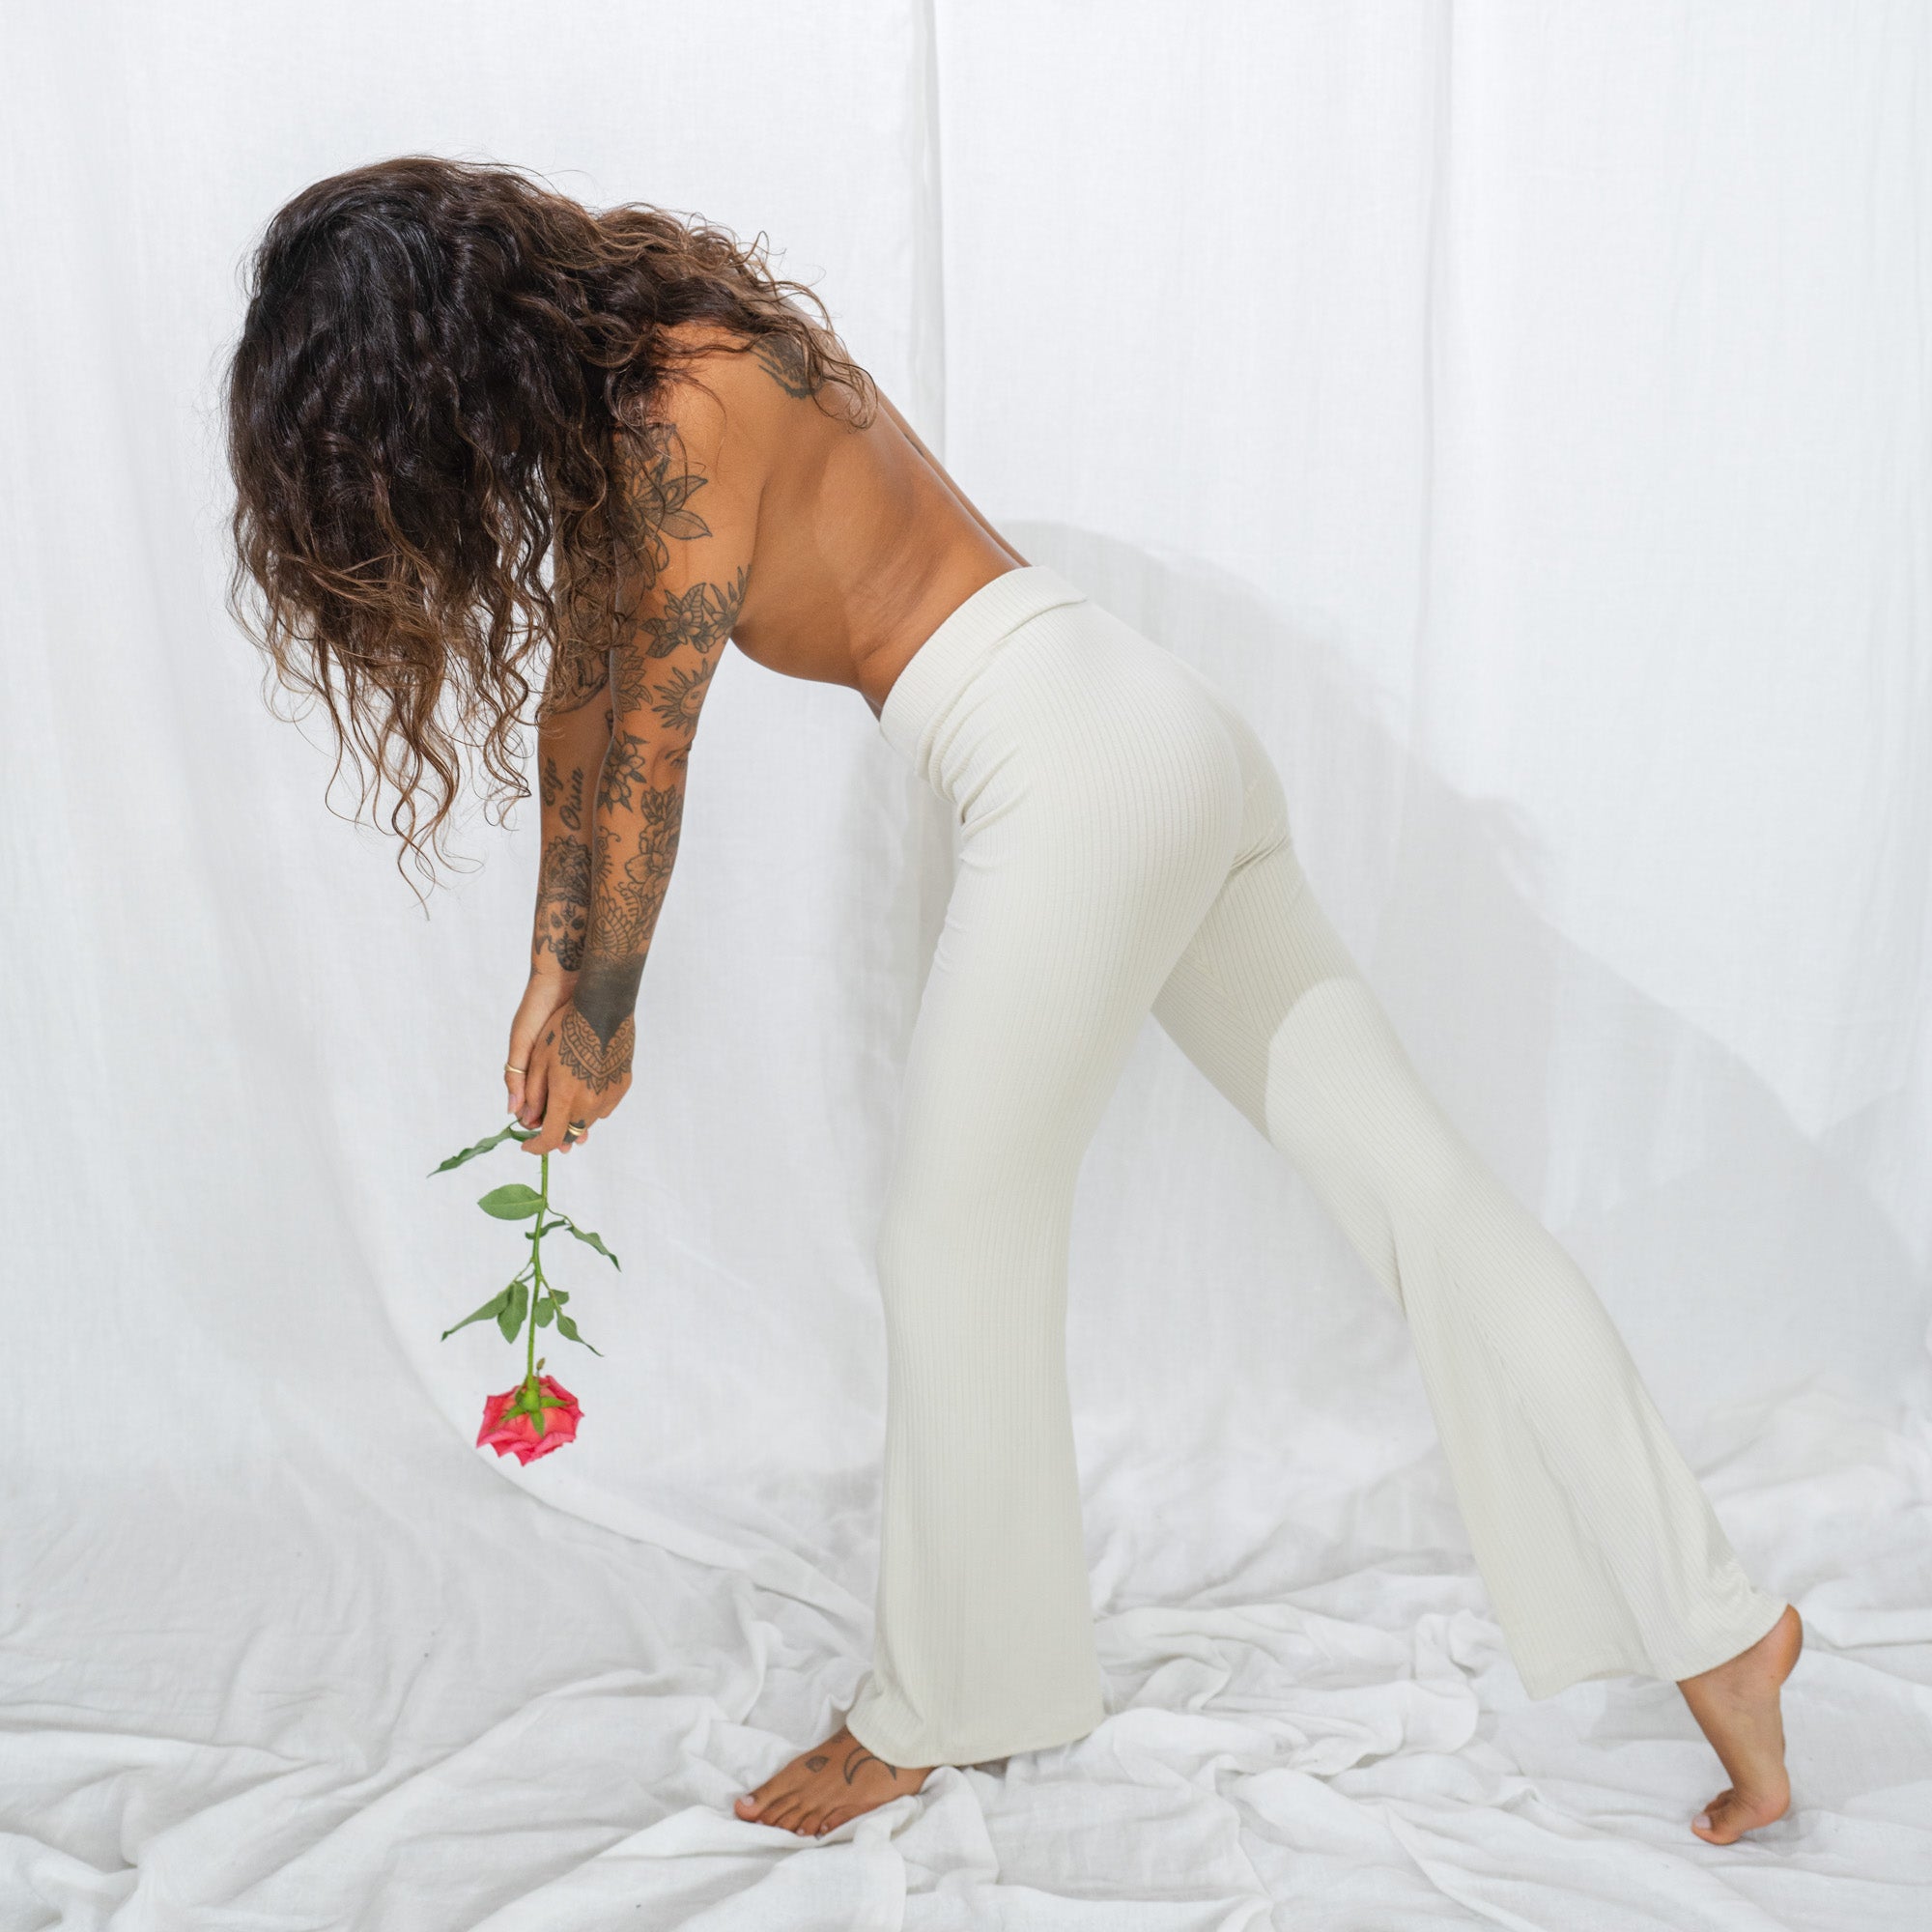 Women's Dynamic Yoga Reversible Leggings - Solid/Print Brown and